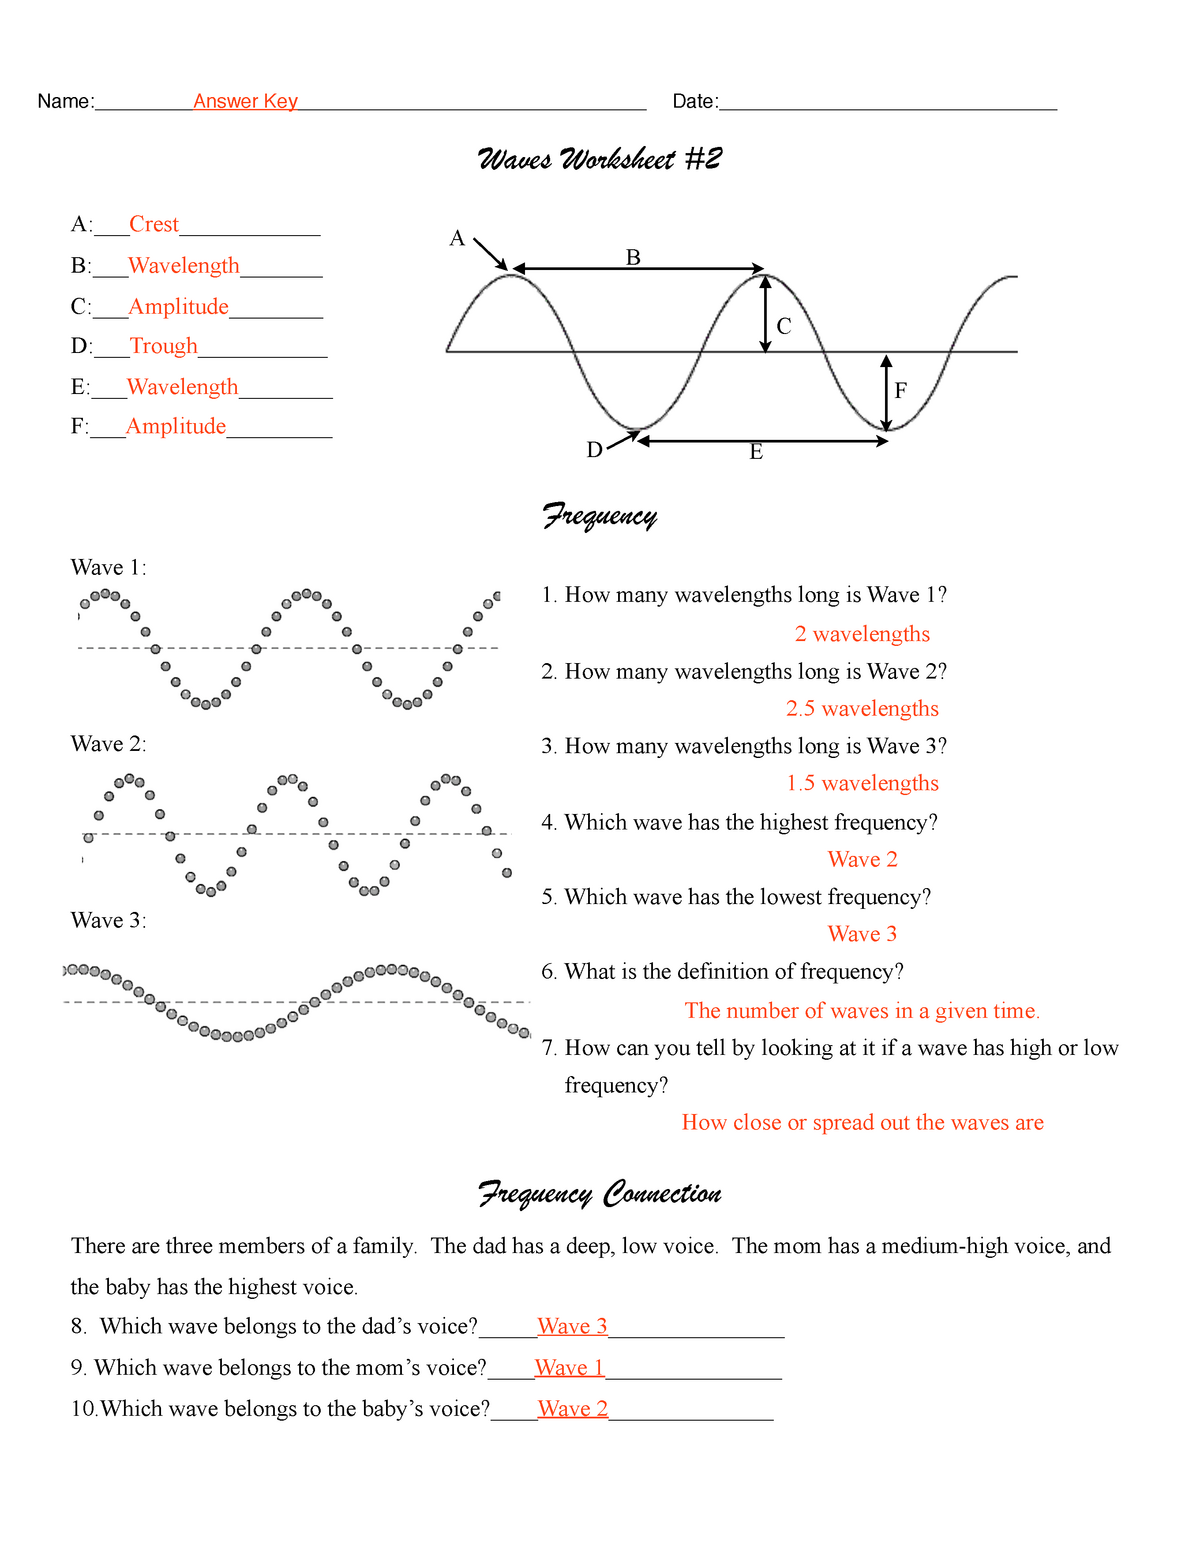 21 wave worksheet answer pdf - Waves Worksheet A Intended For Waves Worksheet Answer Key